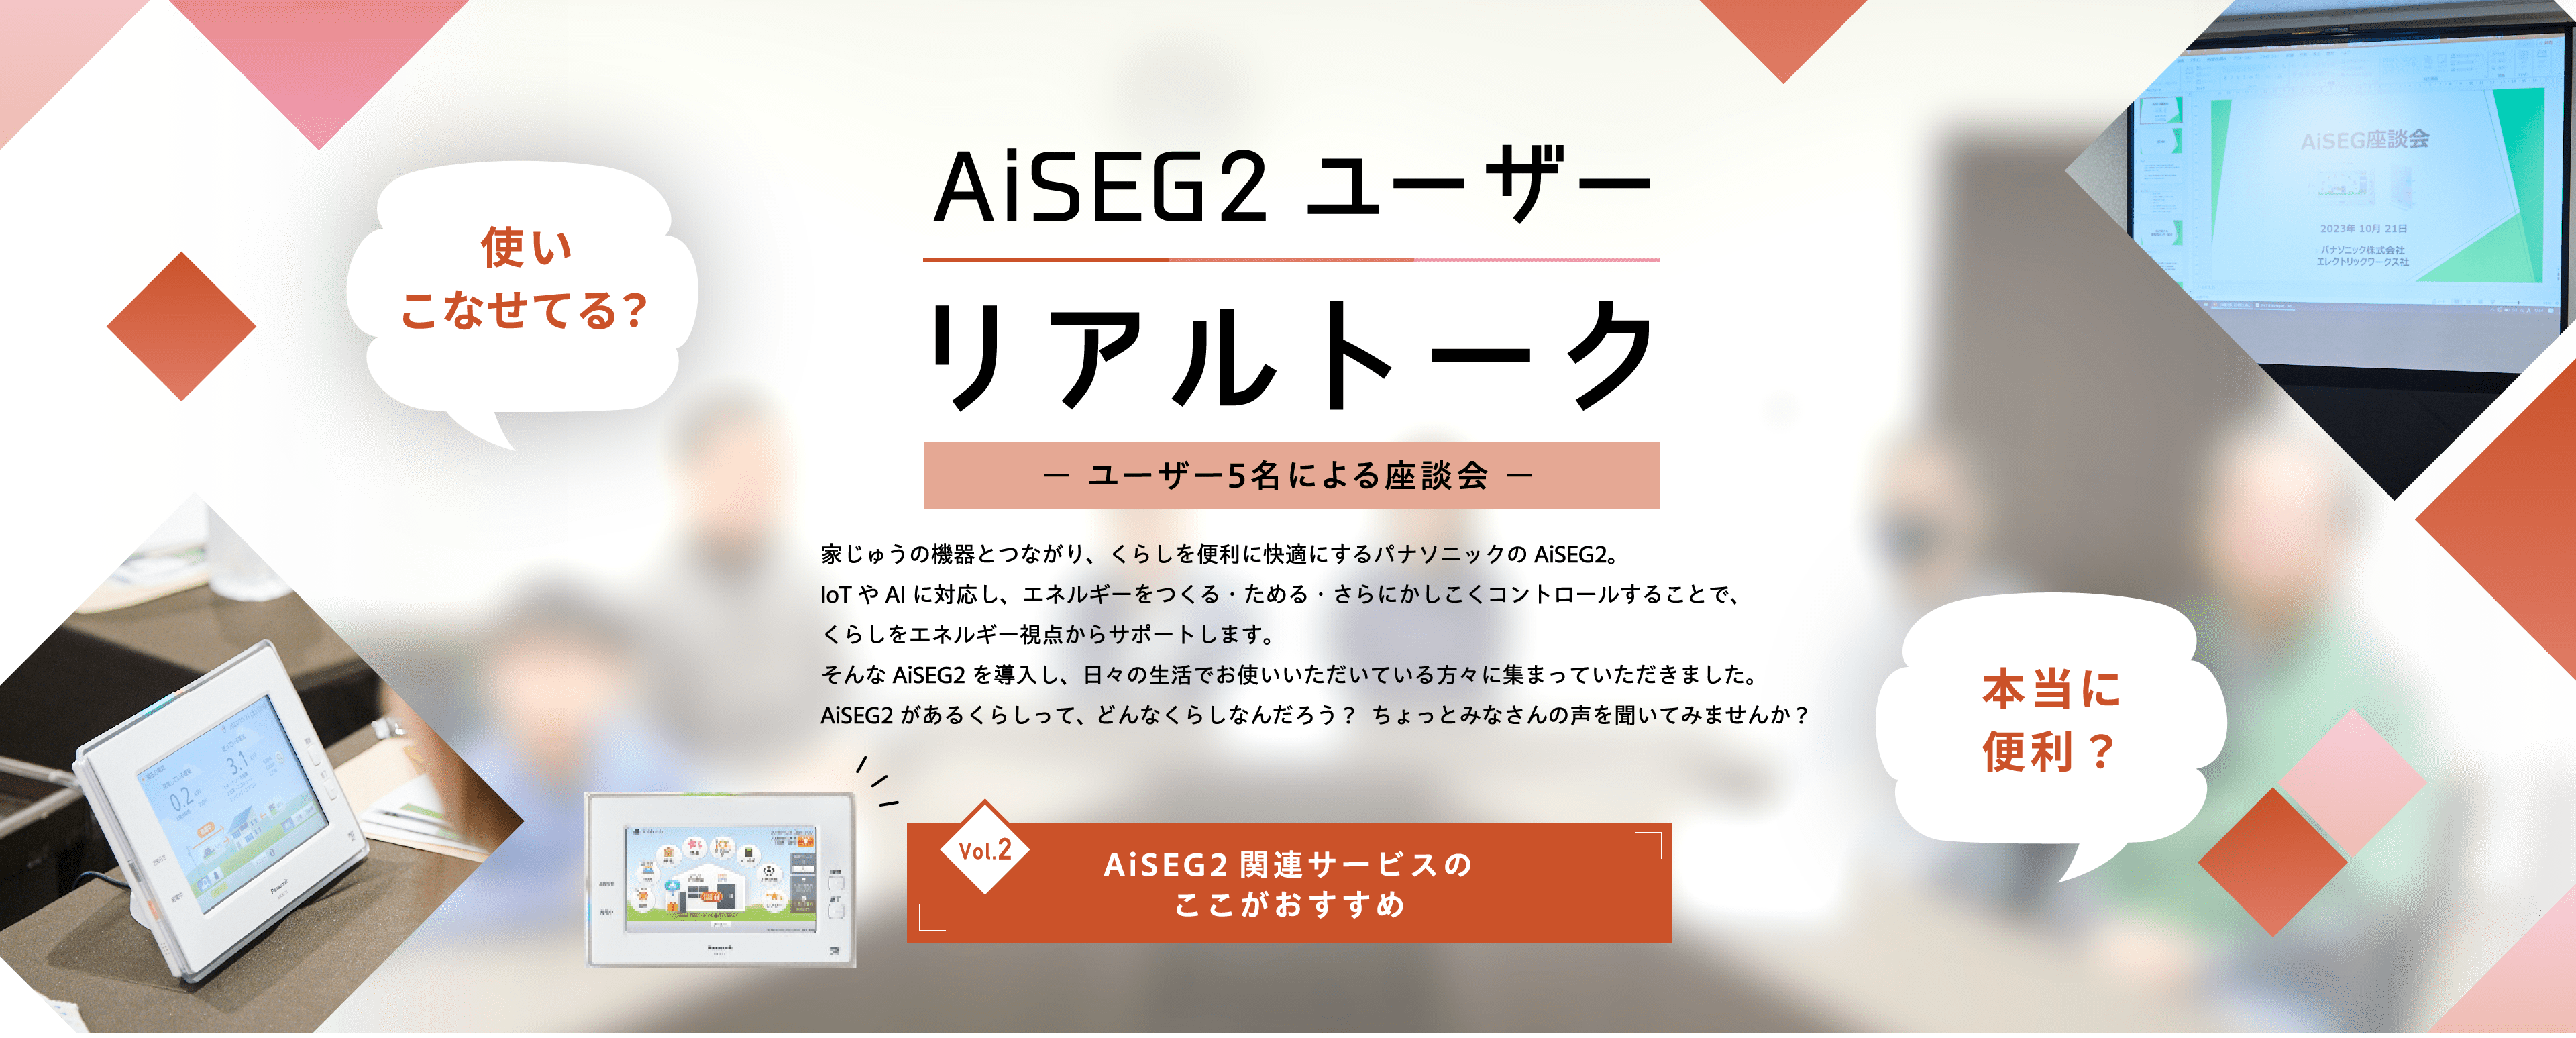 AiSEG2 ユーザー リアルトーク Vol2 AiSEG2関連サービスのここがおすすめ